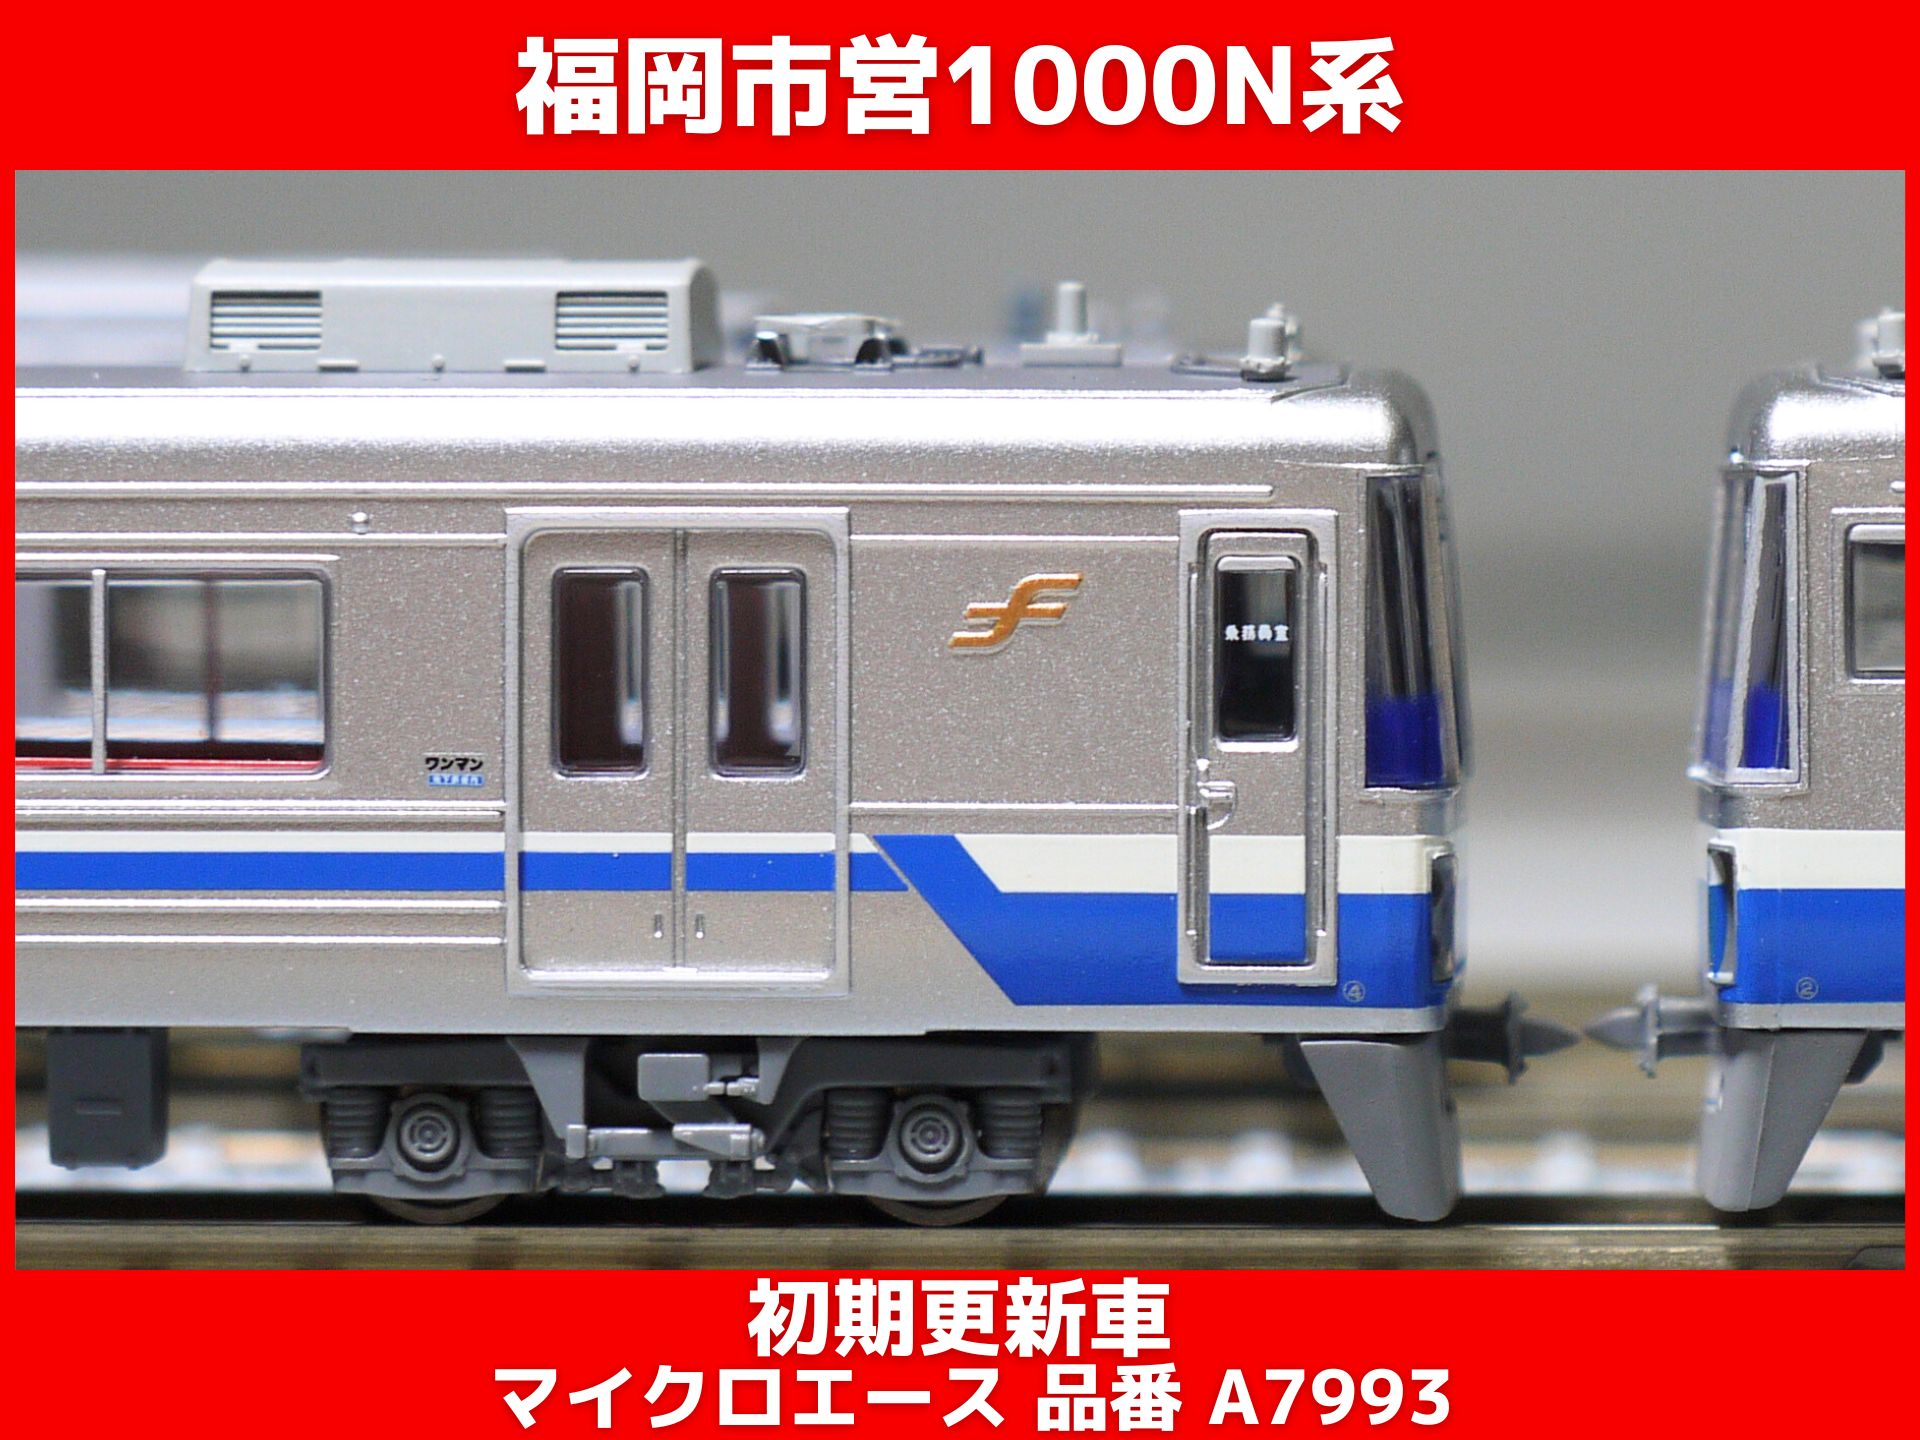 ホビー・楽器・アートマイクロエース A7995 福岡市営地下鉄 1000N系 後期更新車 6両